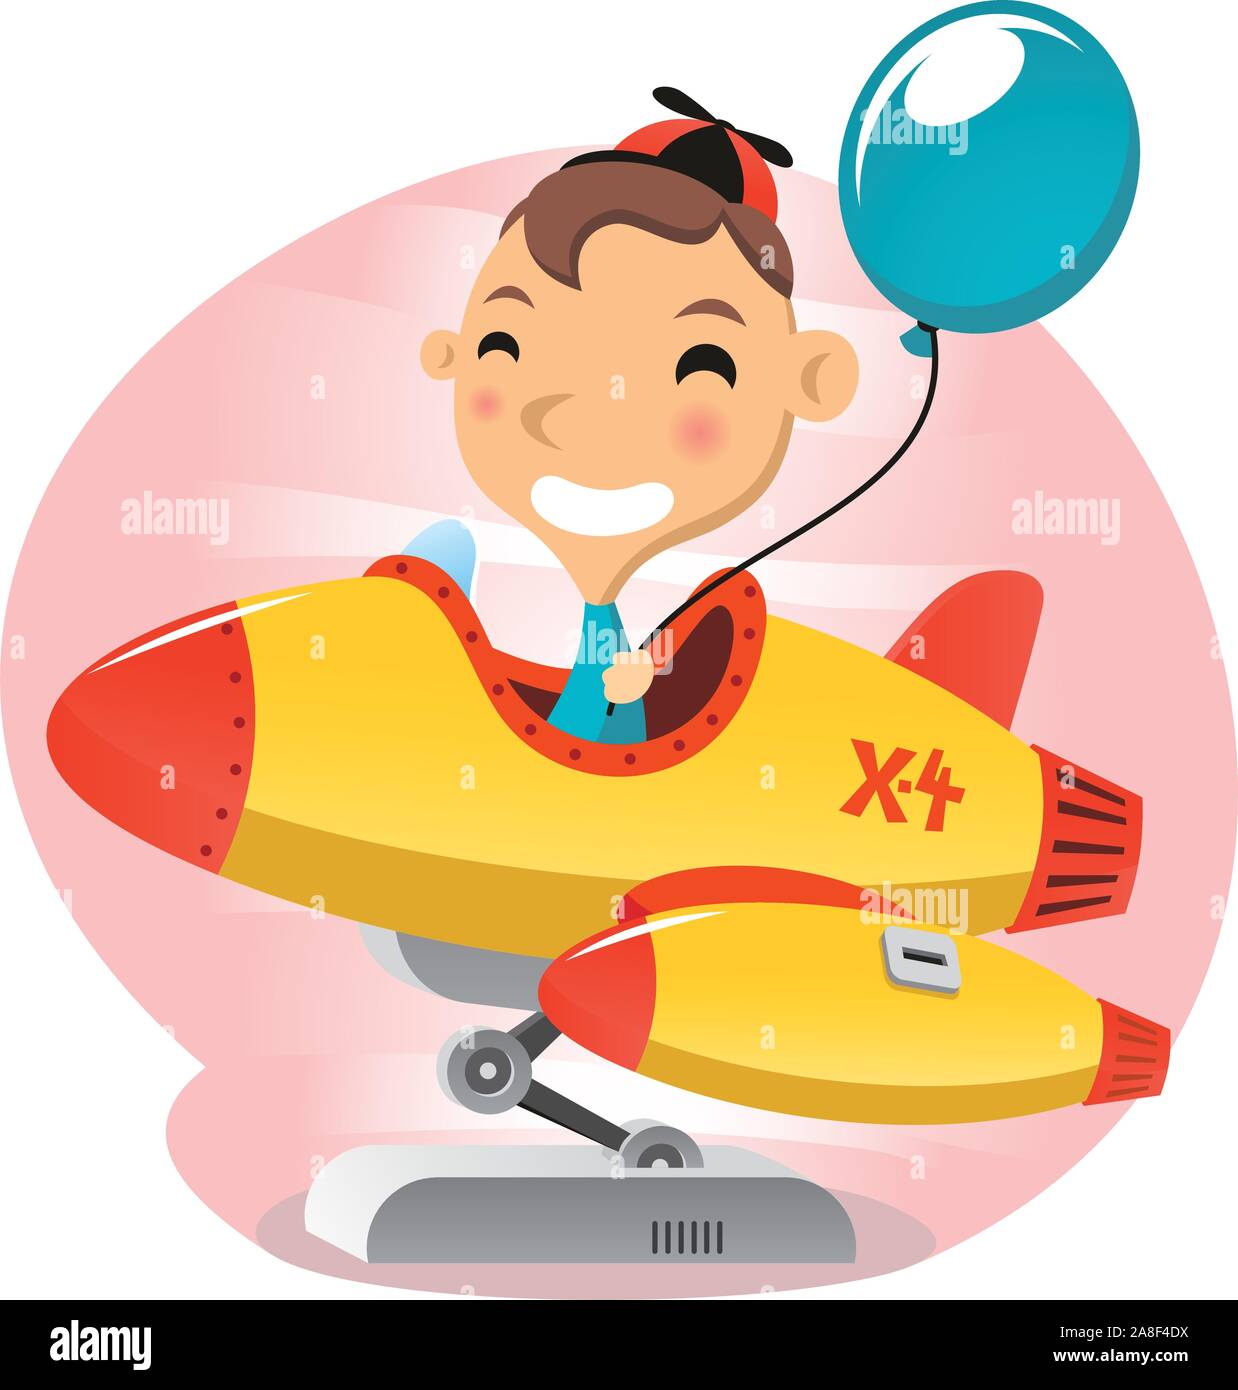 Rocket Ride jeu avec child riding il heureux balloon Illustration de Vecteur